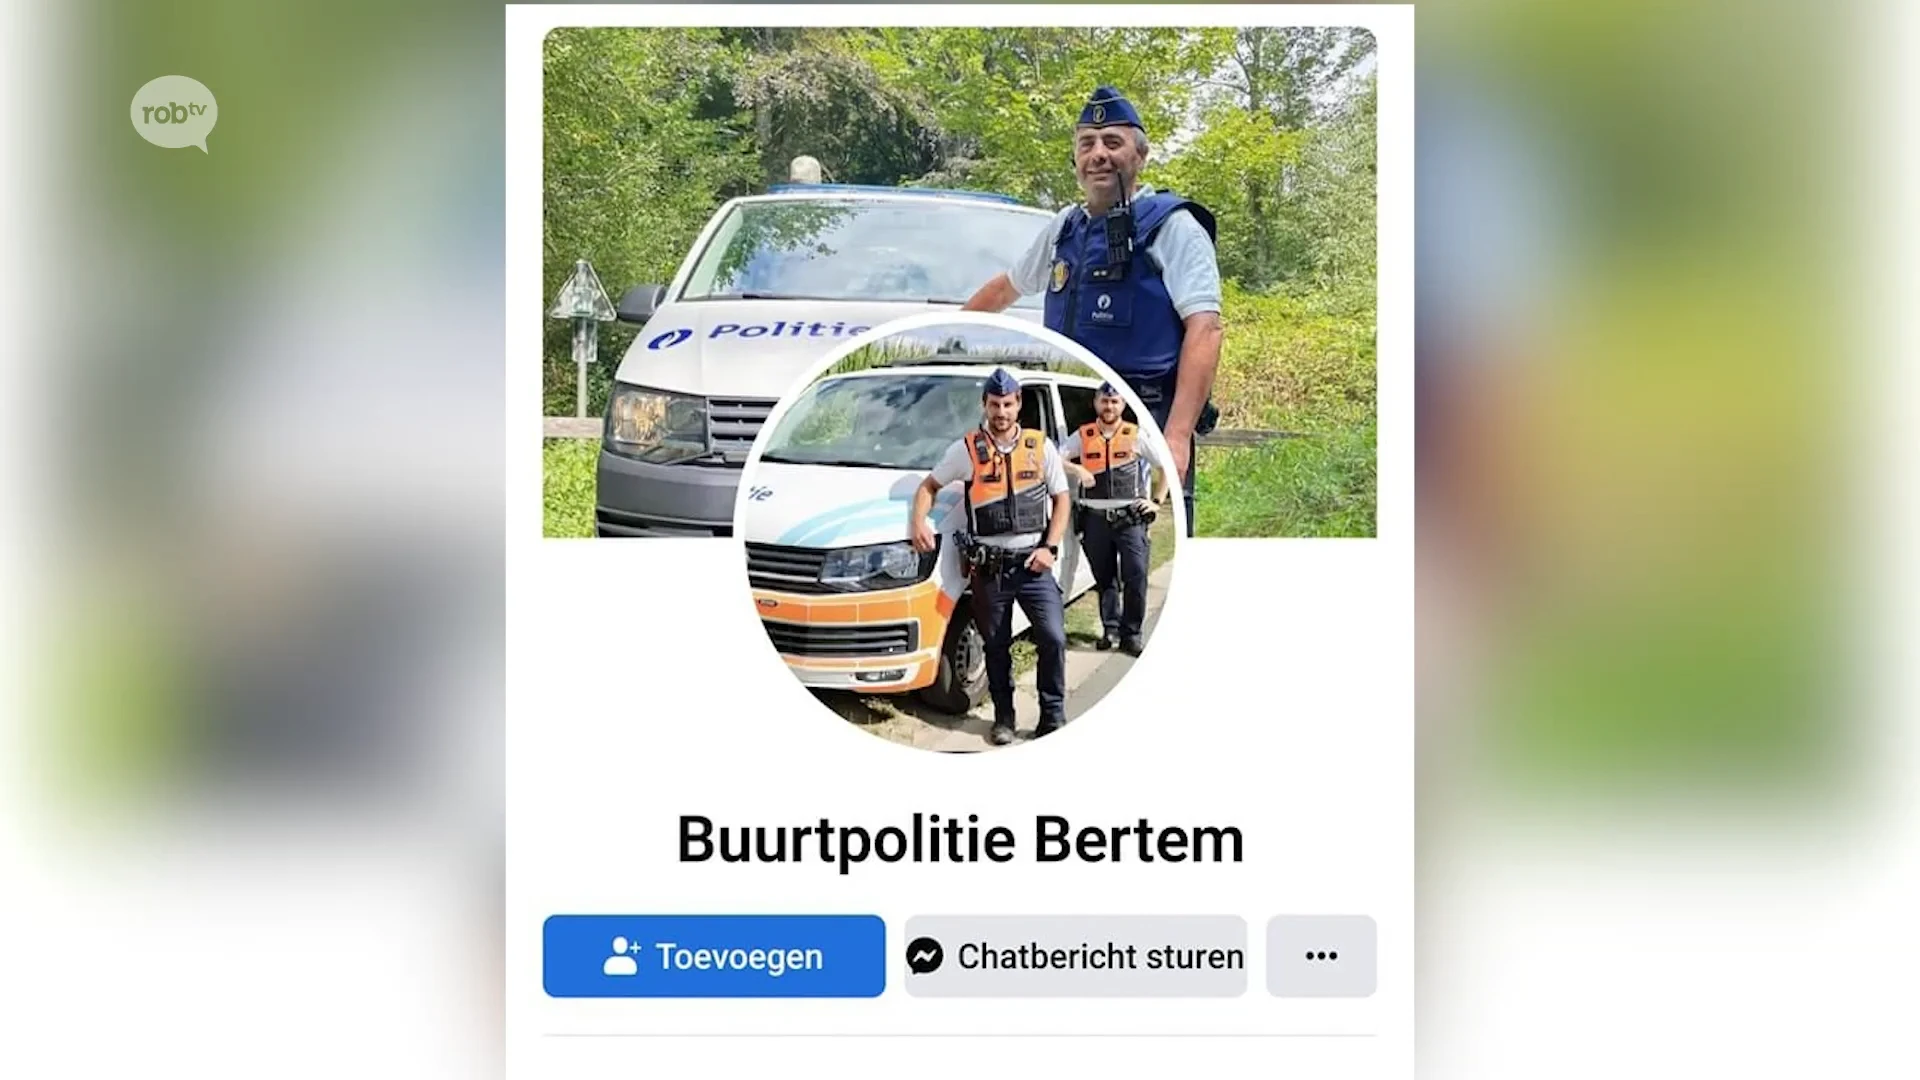 Parket van Leuven start onderzoek naar vals Facebookprofiel "Buurtpolitie Bertem"